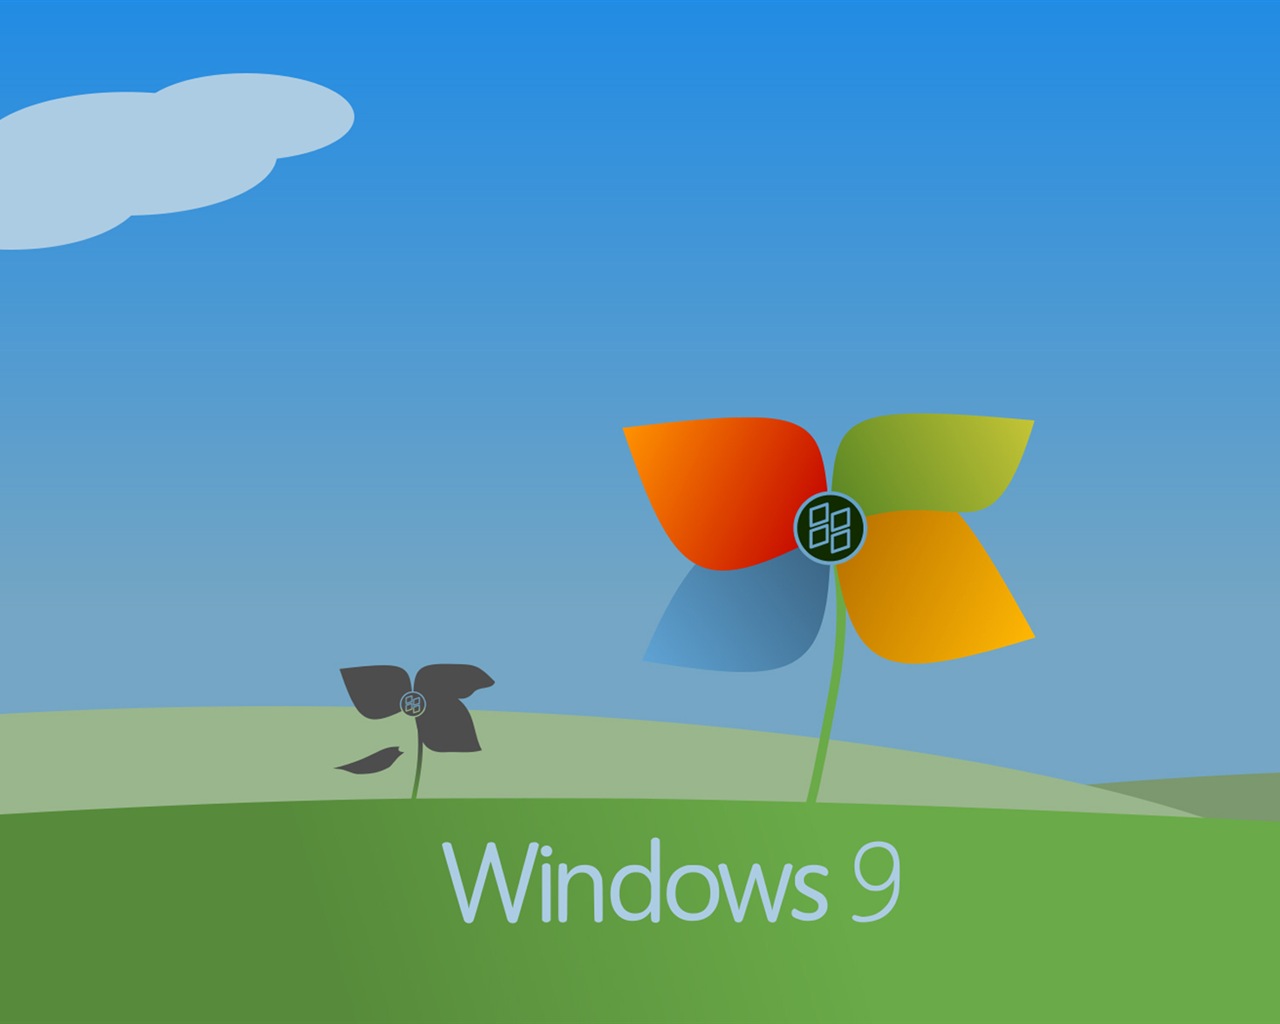 微软 Windows 9 系统主题 高清壁纸5 - 1280x1024